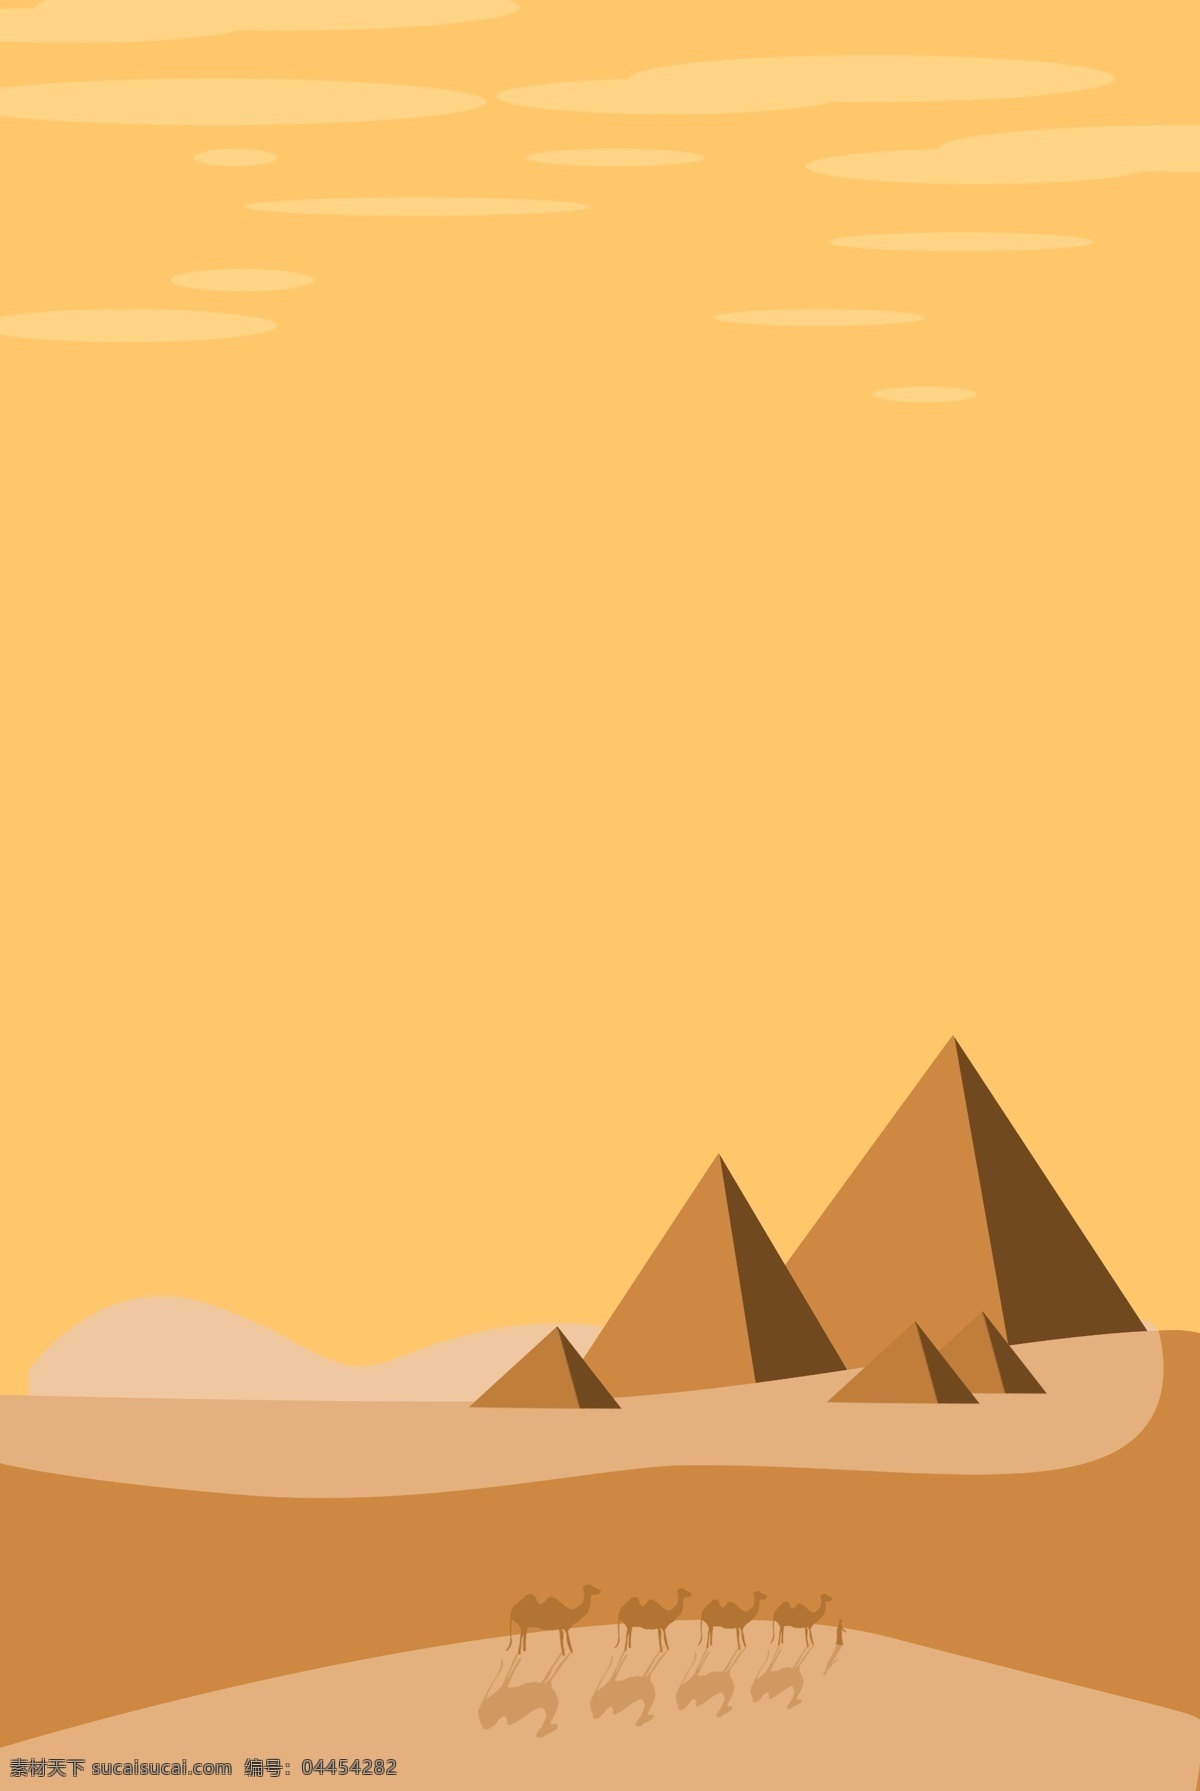 简约 沙漠 风景旅游 海报 背景 沙漠风景 自然风光 旅游 黄色 骆驼 黄沙 沙漠背景 旅游背景